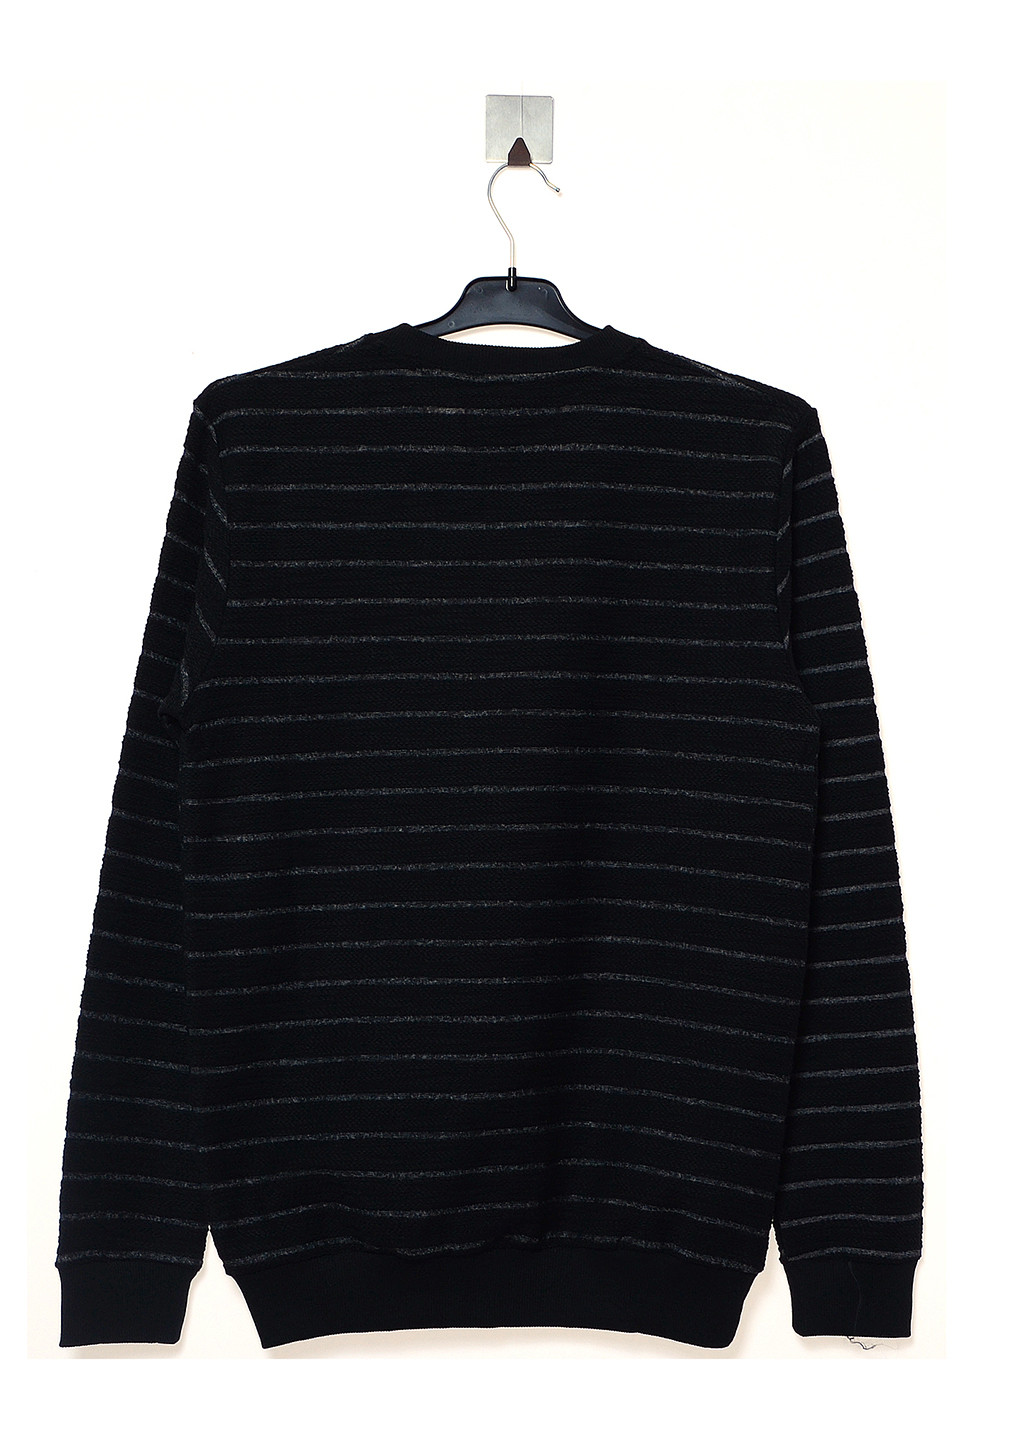 Черный демисезонный пуловер пуловер Troll